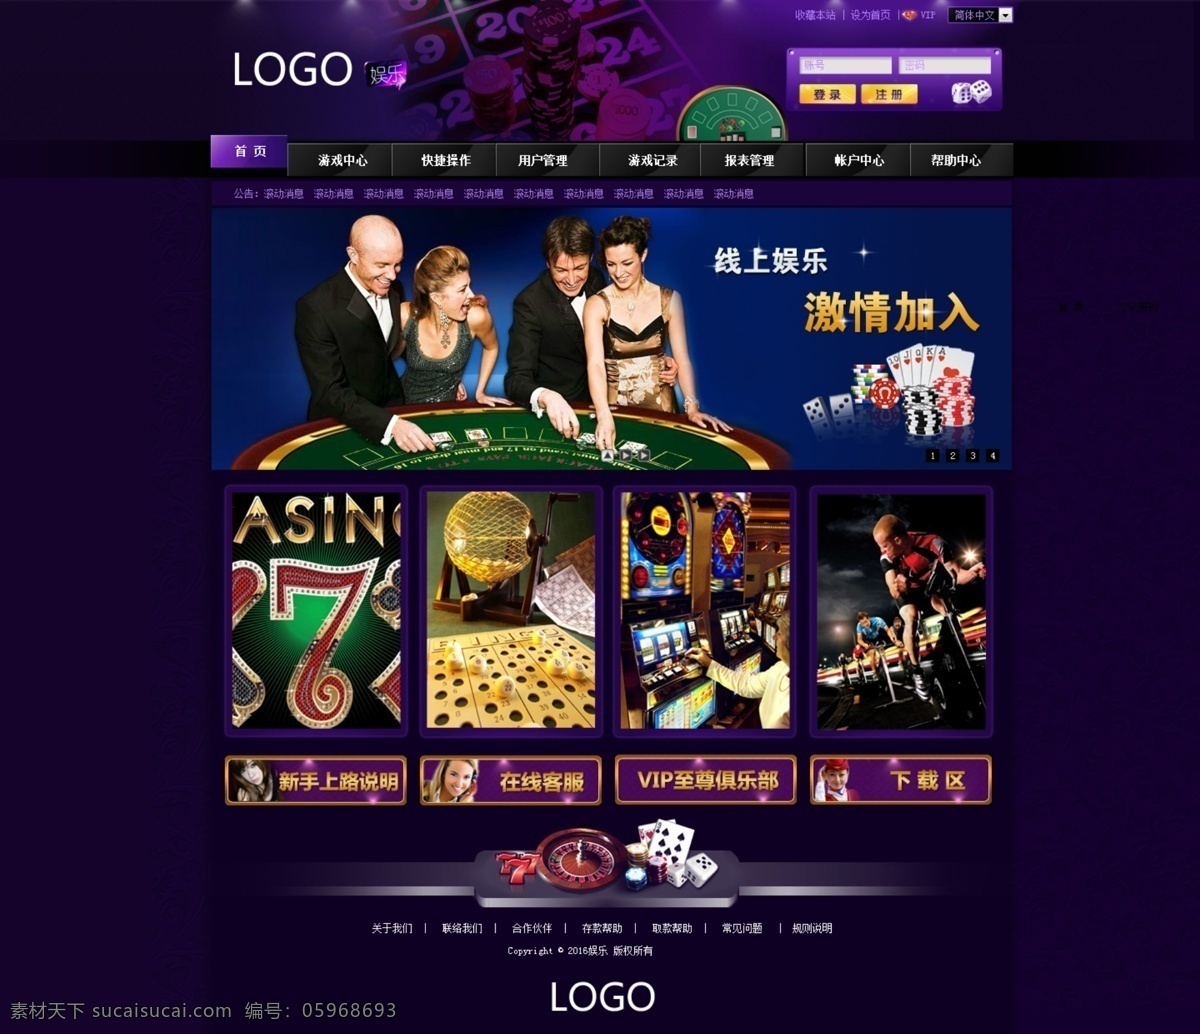 娱乐网页模板 娱乐 博彩 网页模板 首页模板 紫色 中文模板 web 界面设计